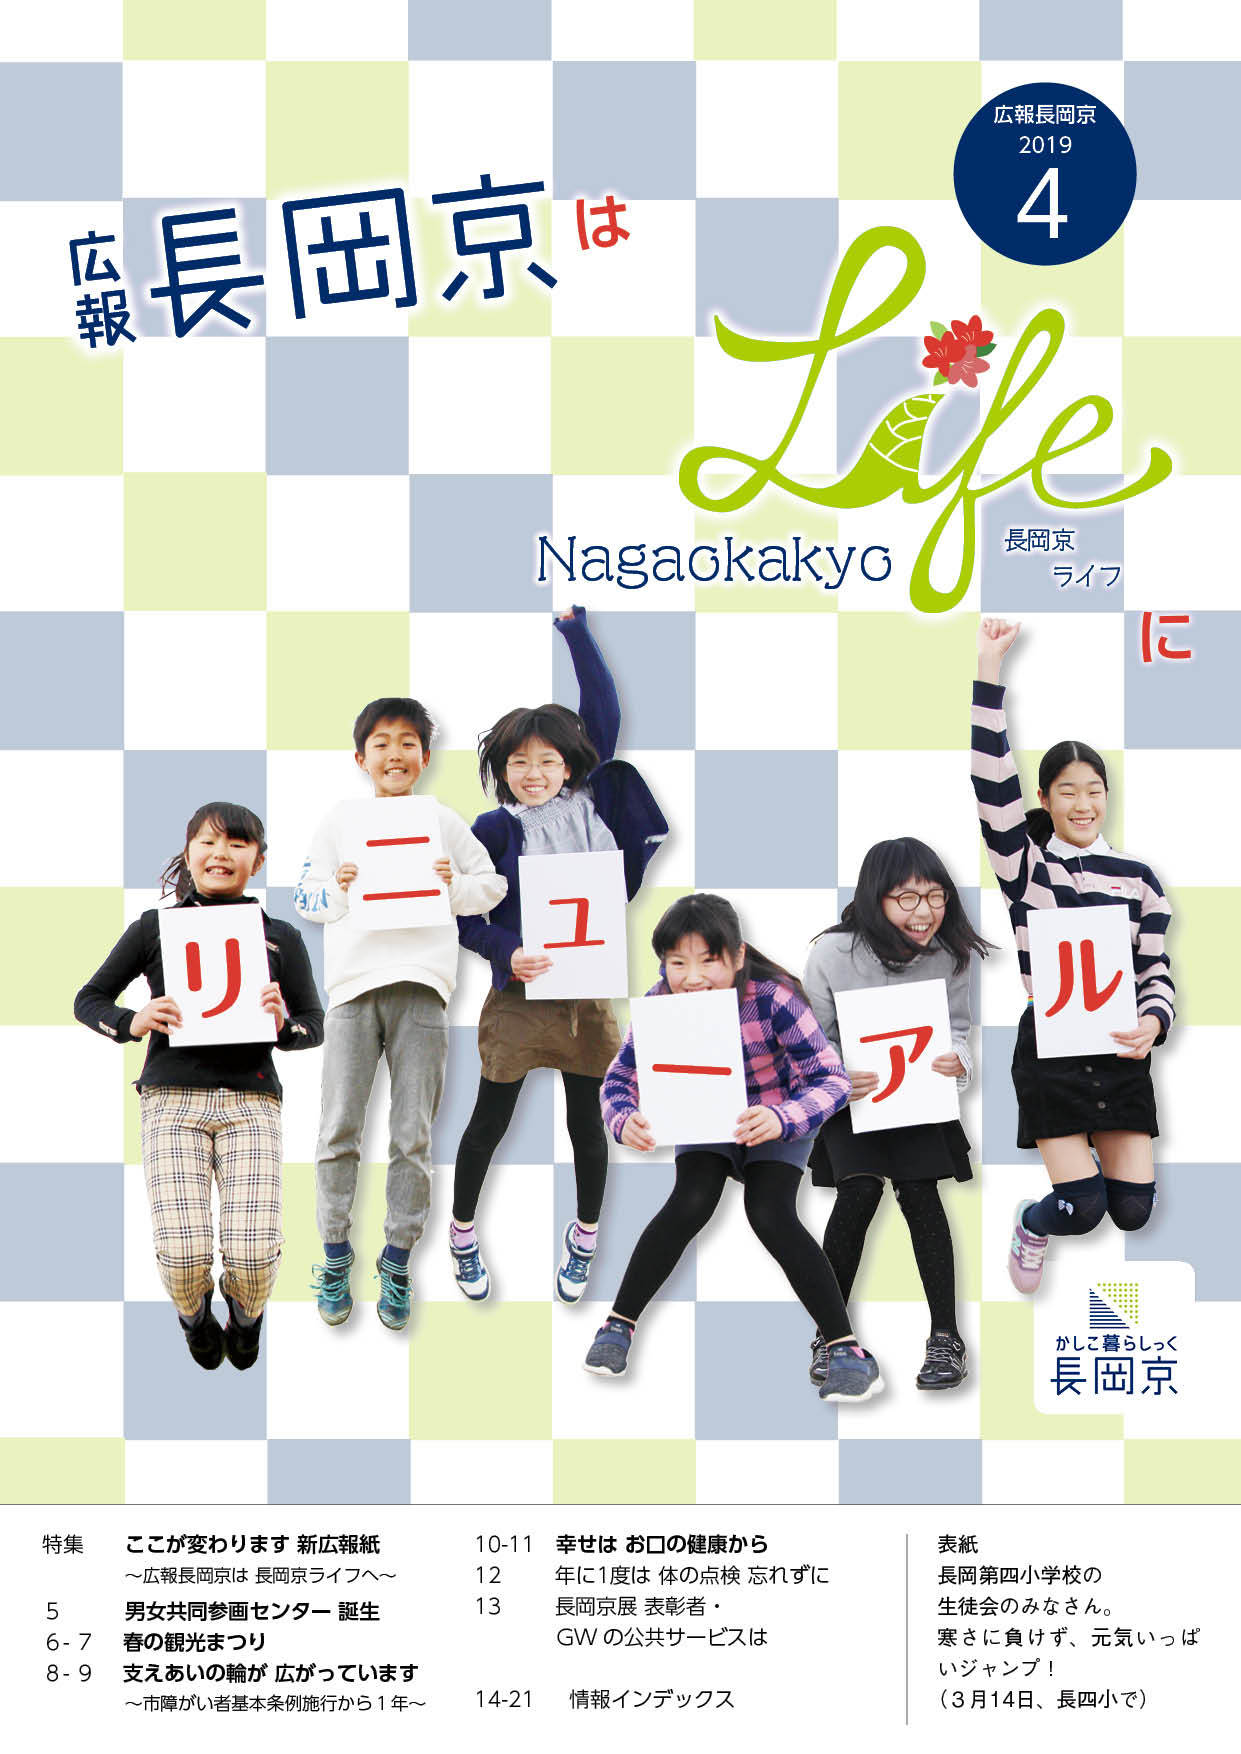 4月号の表紙画像。元気いっぱいにジャンプする長岡第四小学校の児童たち